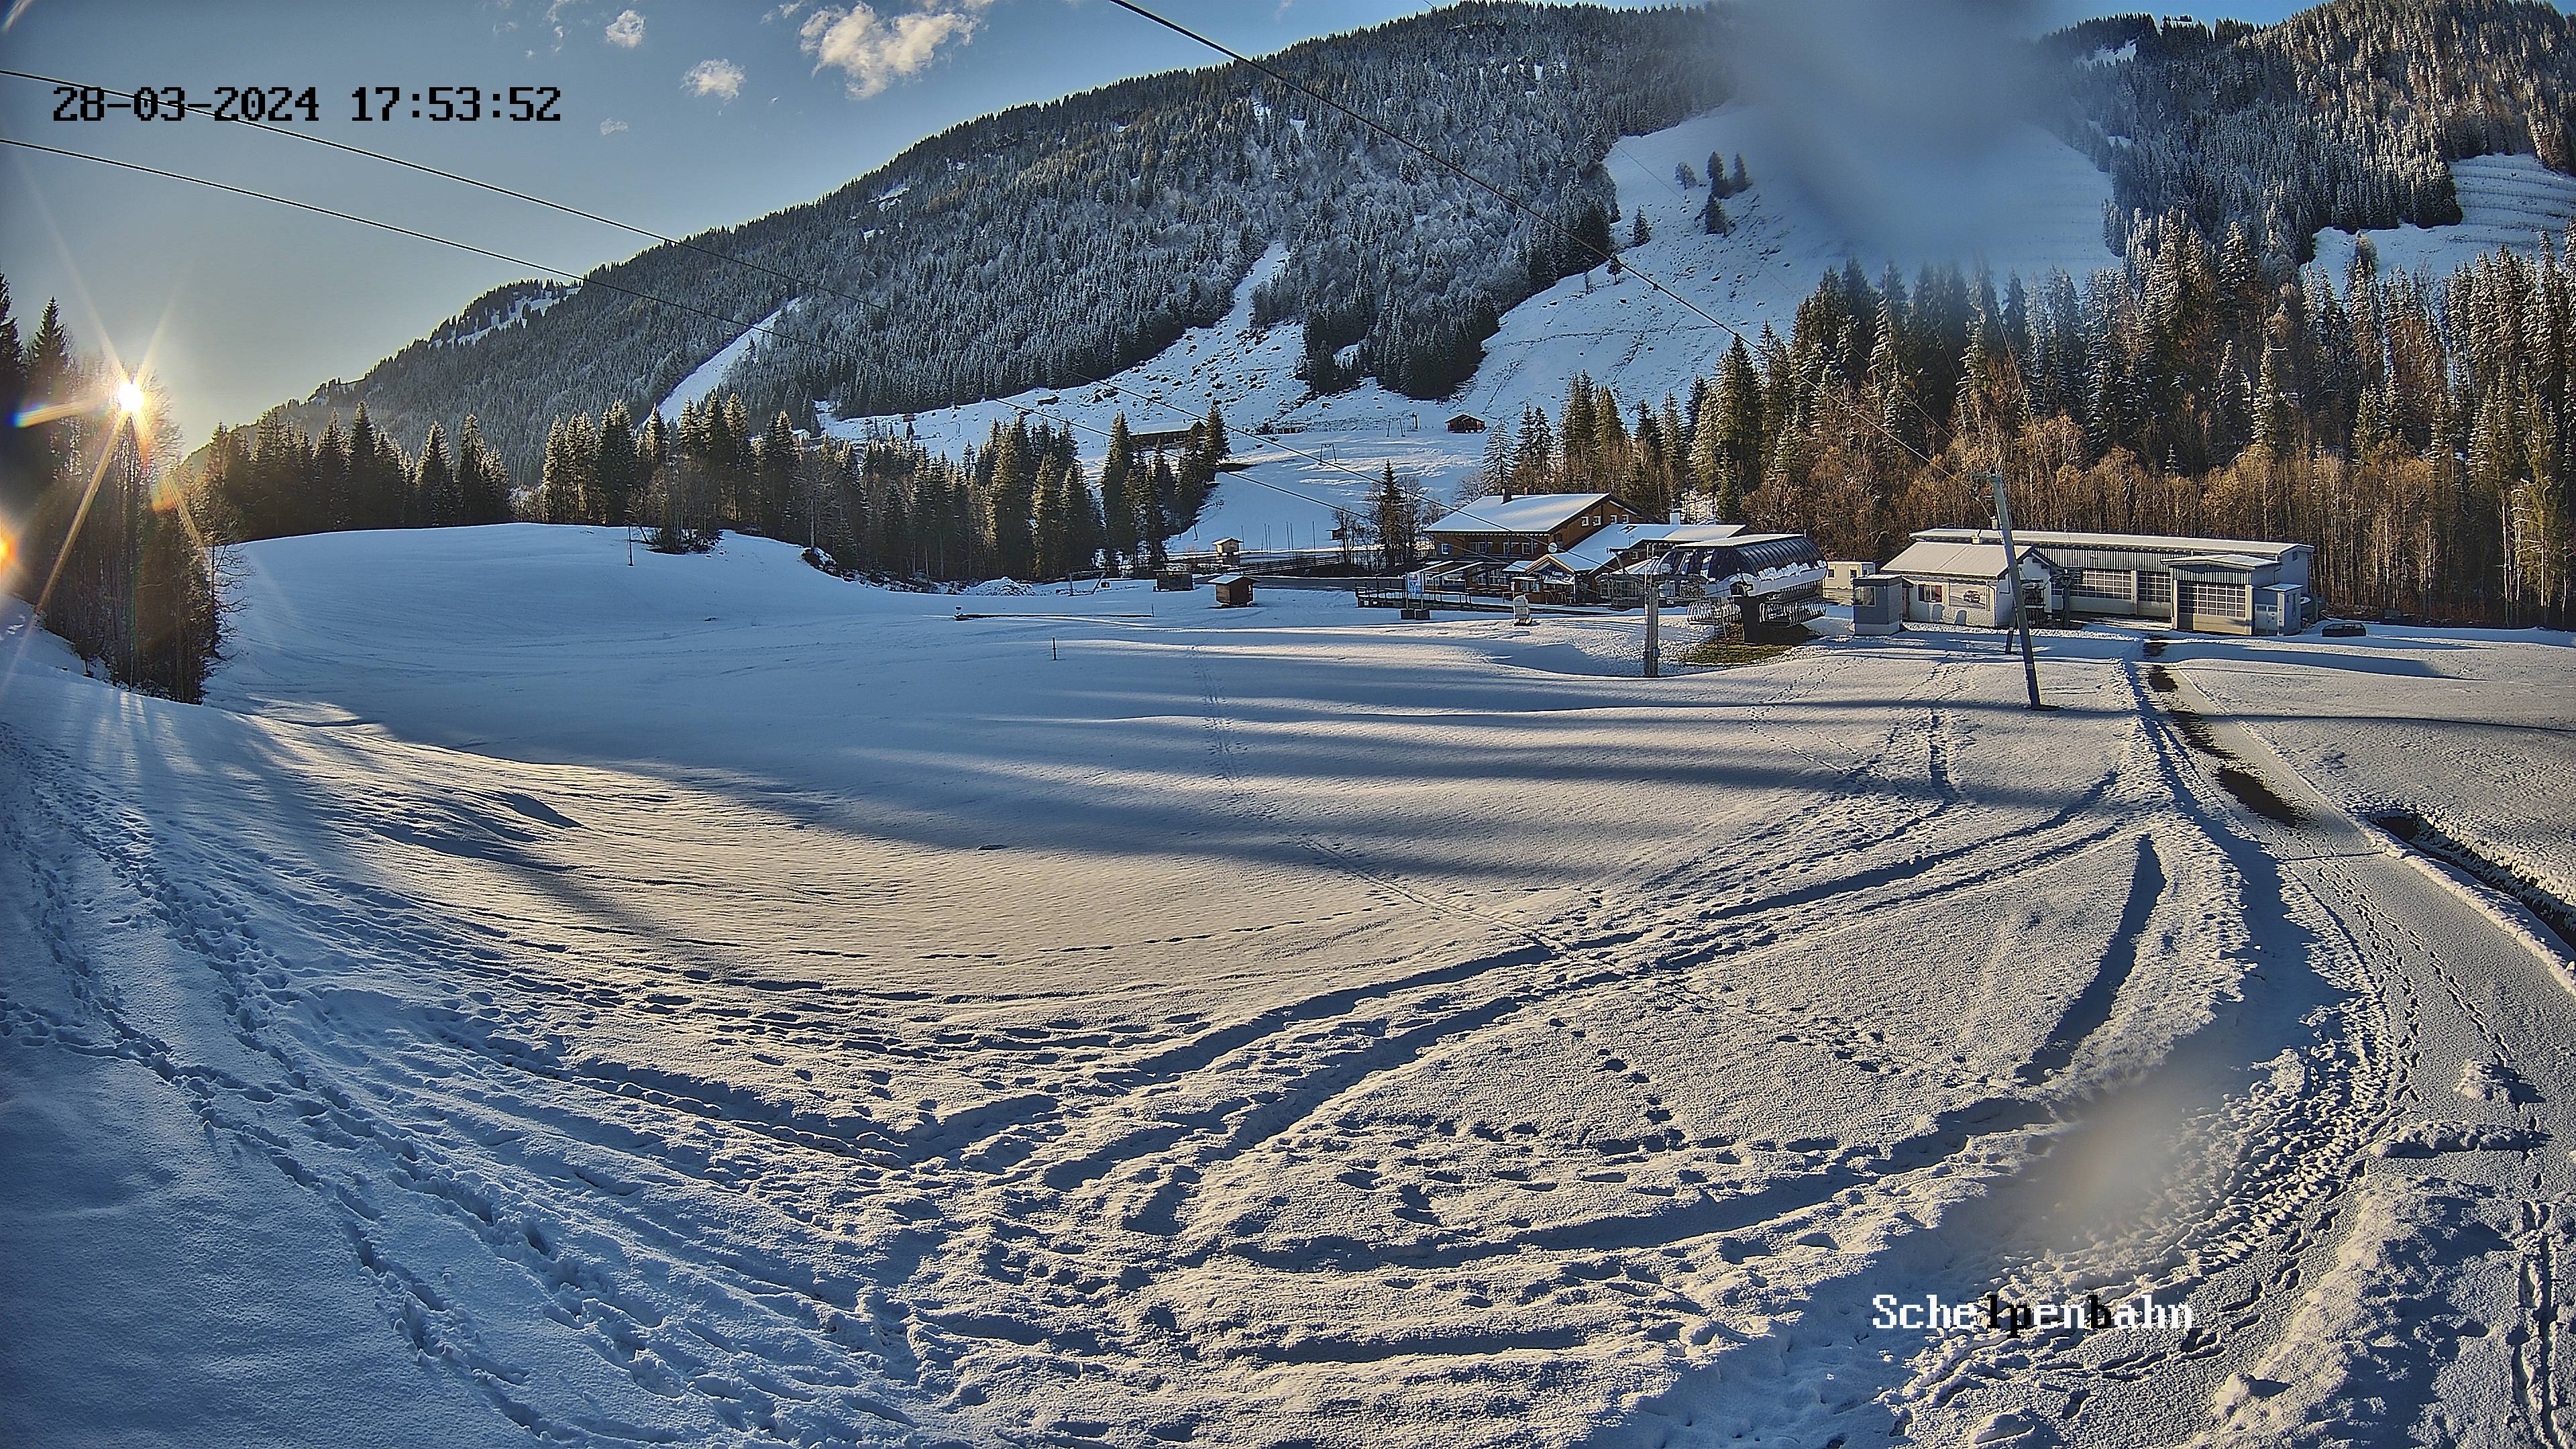 Balderschwang webcam - Schelpenbahn ski atation